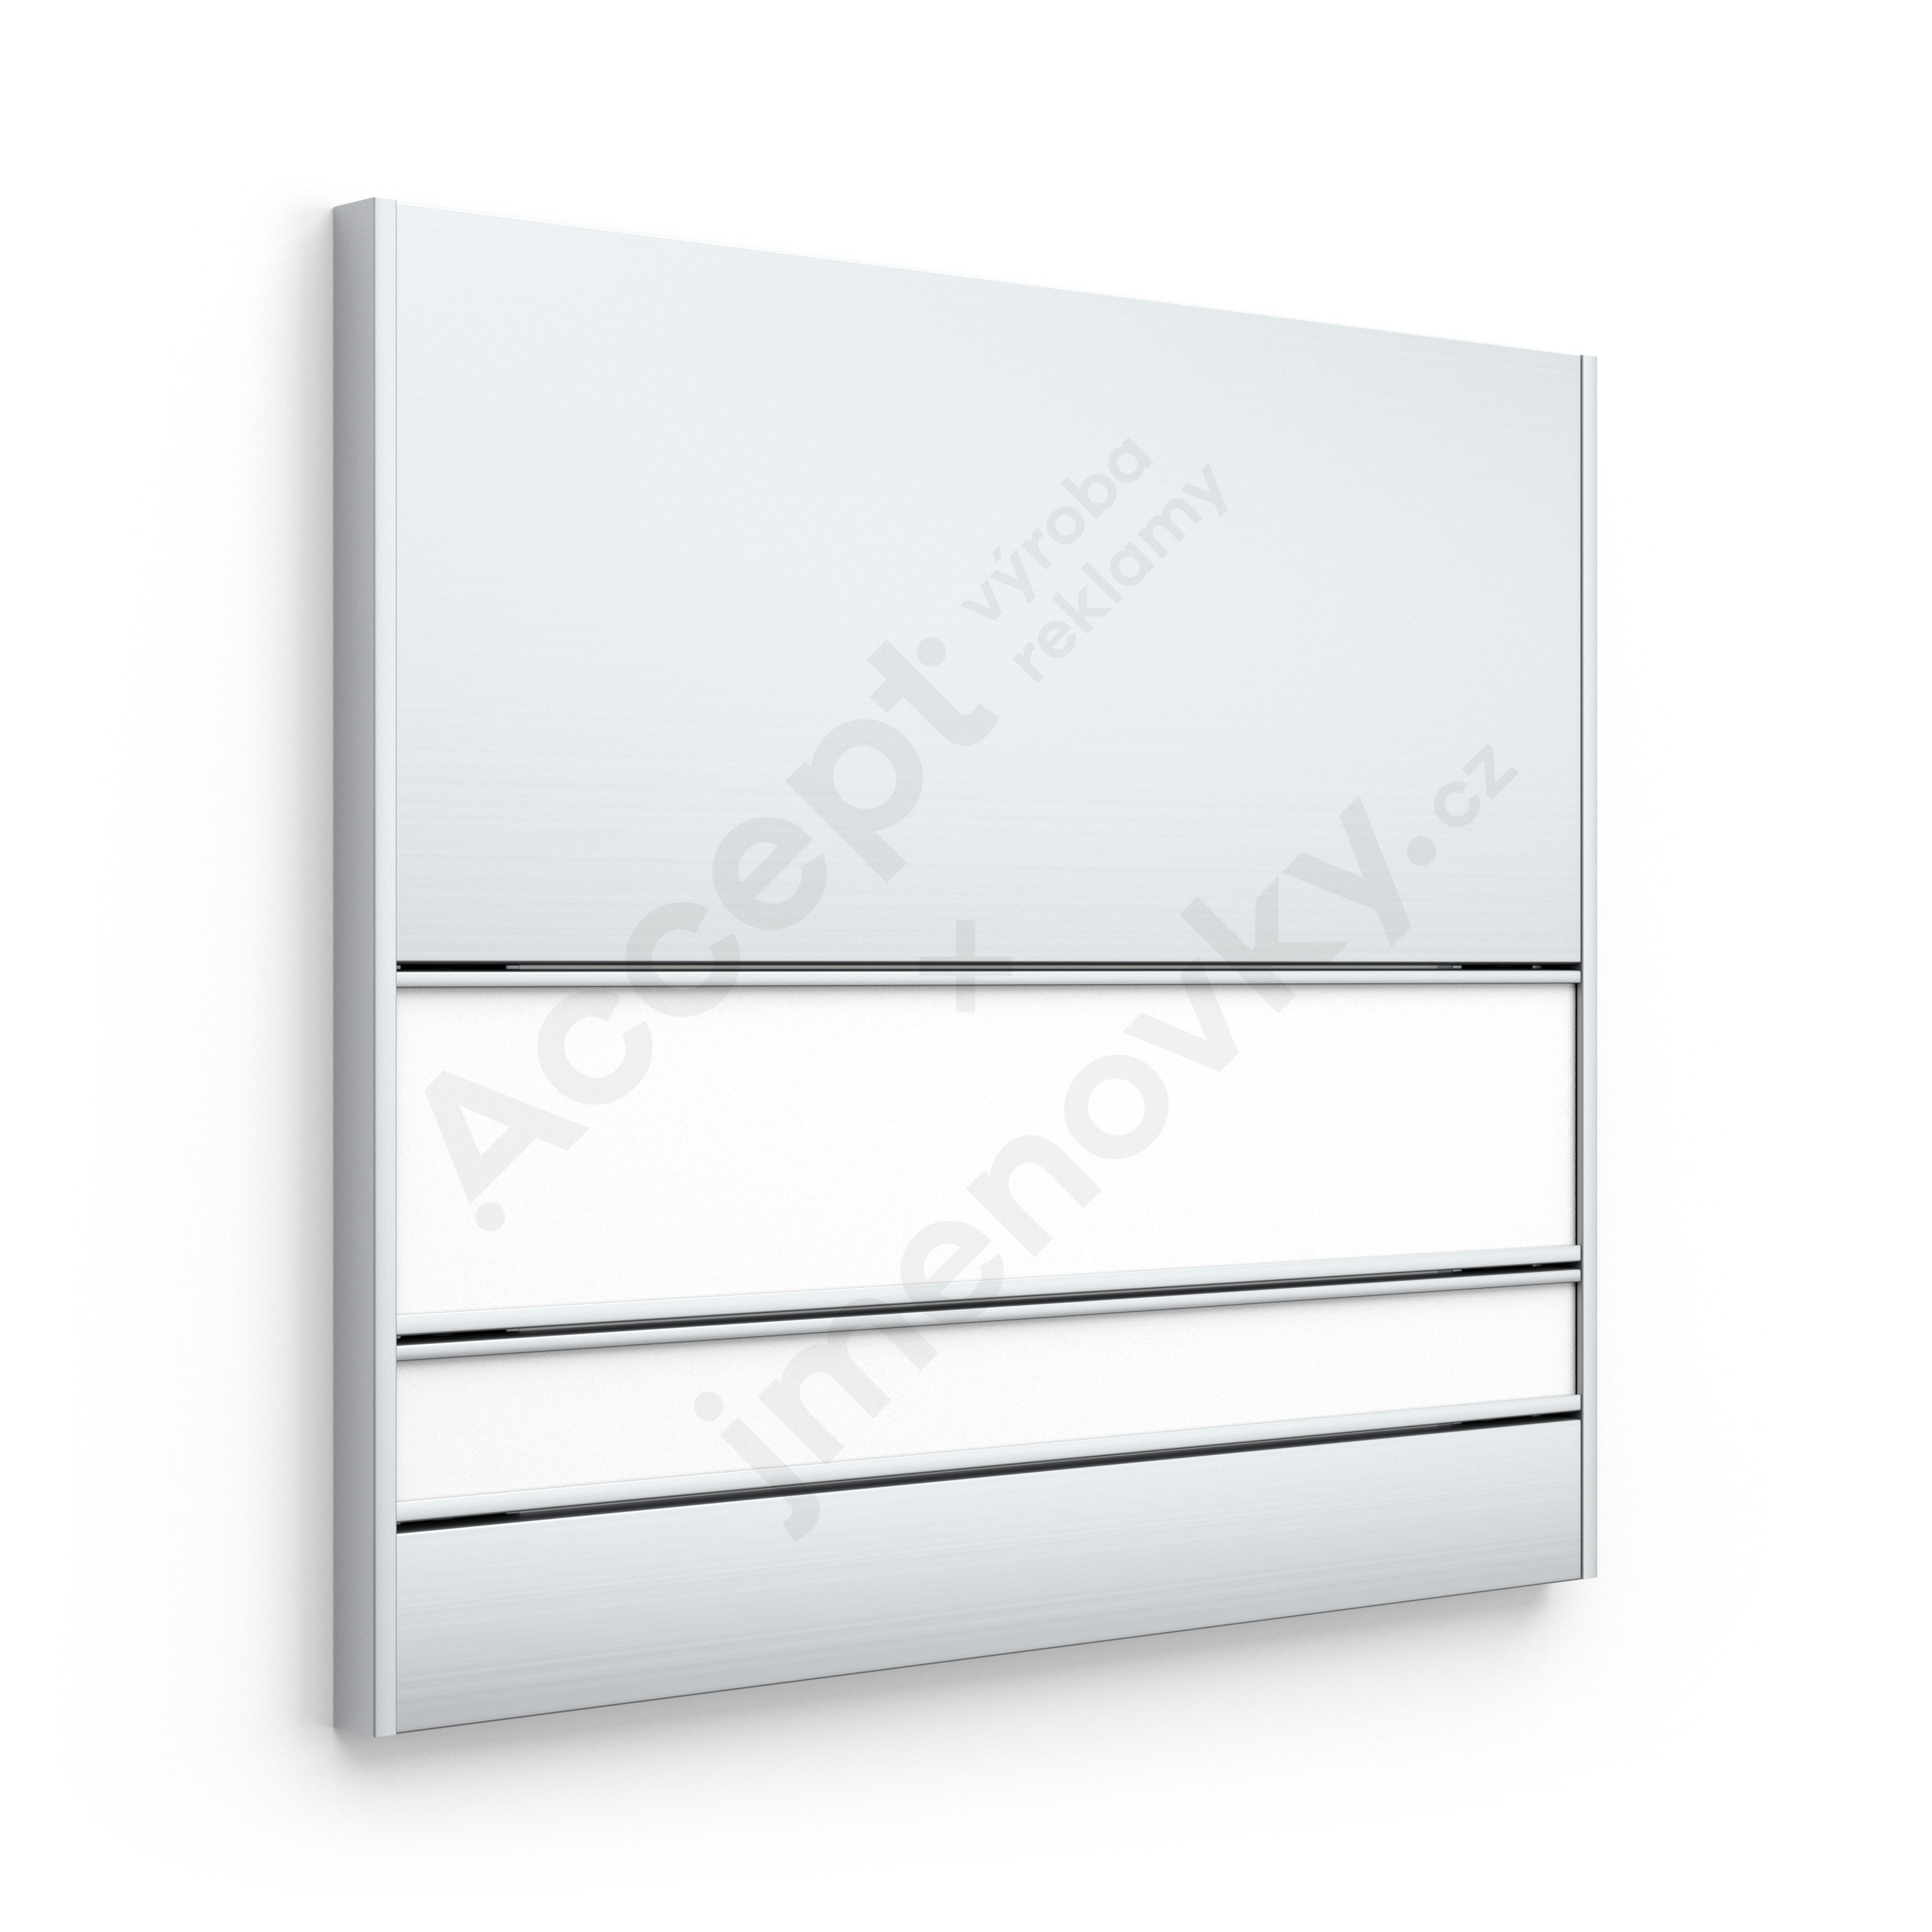 ACCEPT Dveřní tabulka SlimSlatz (zásuvný systém, rovné bočnice, 187 x 165 mm) - stříbrná tabulka